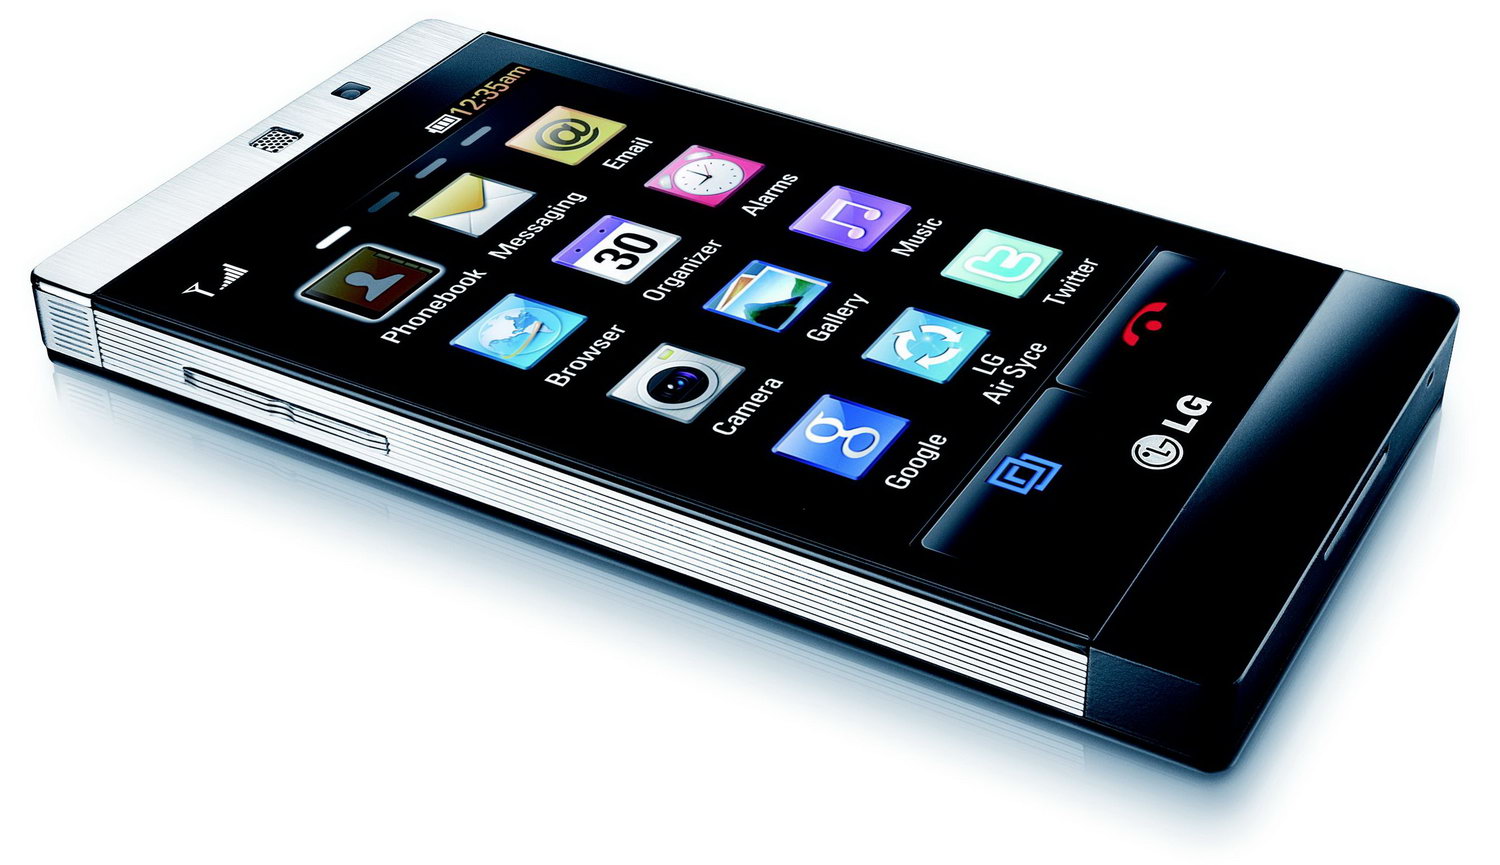 LG gd880 смартфон